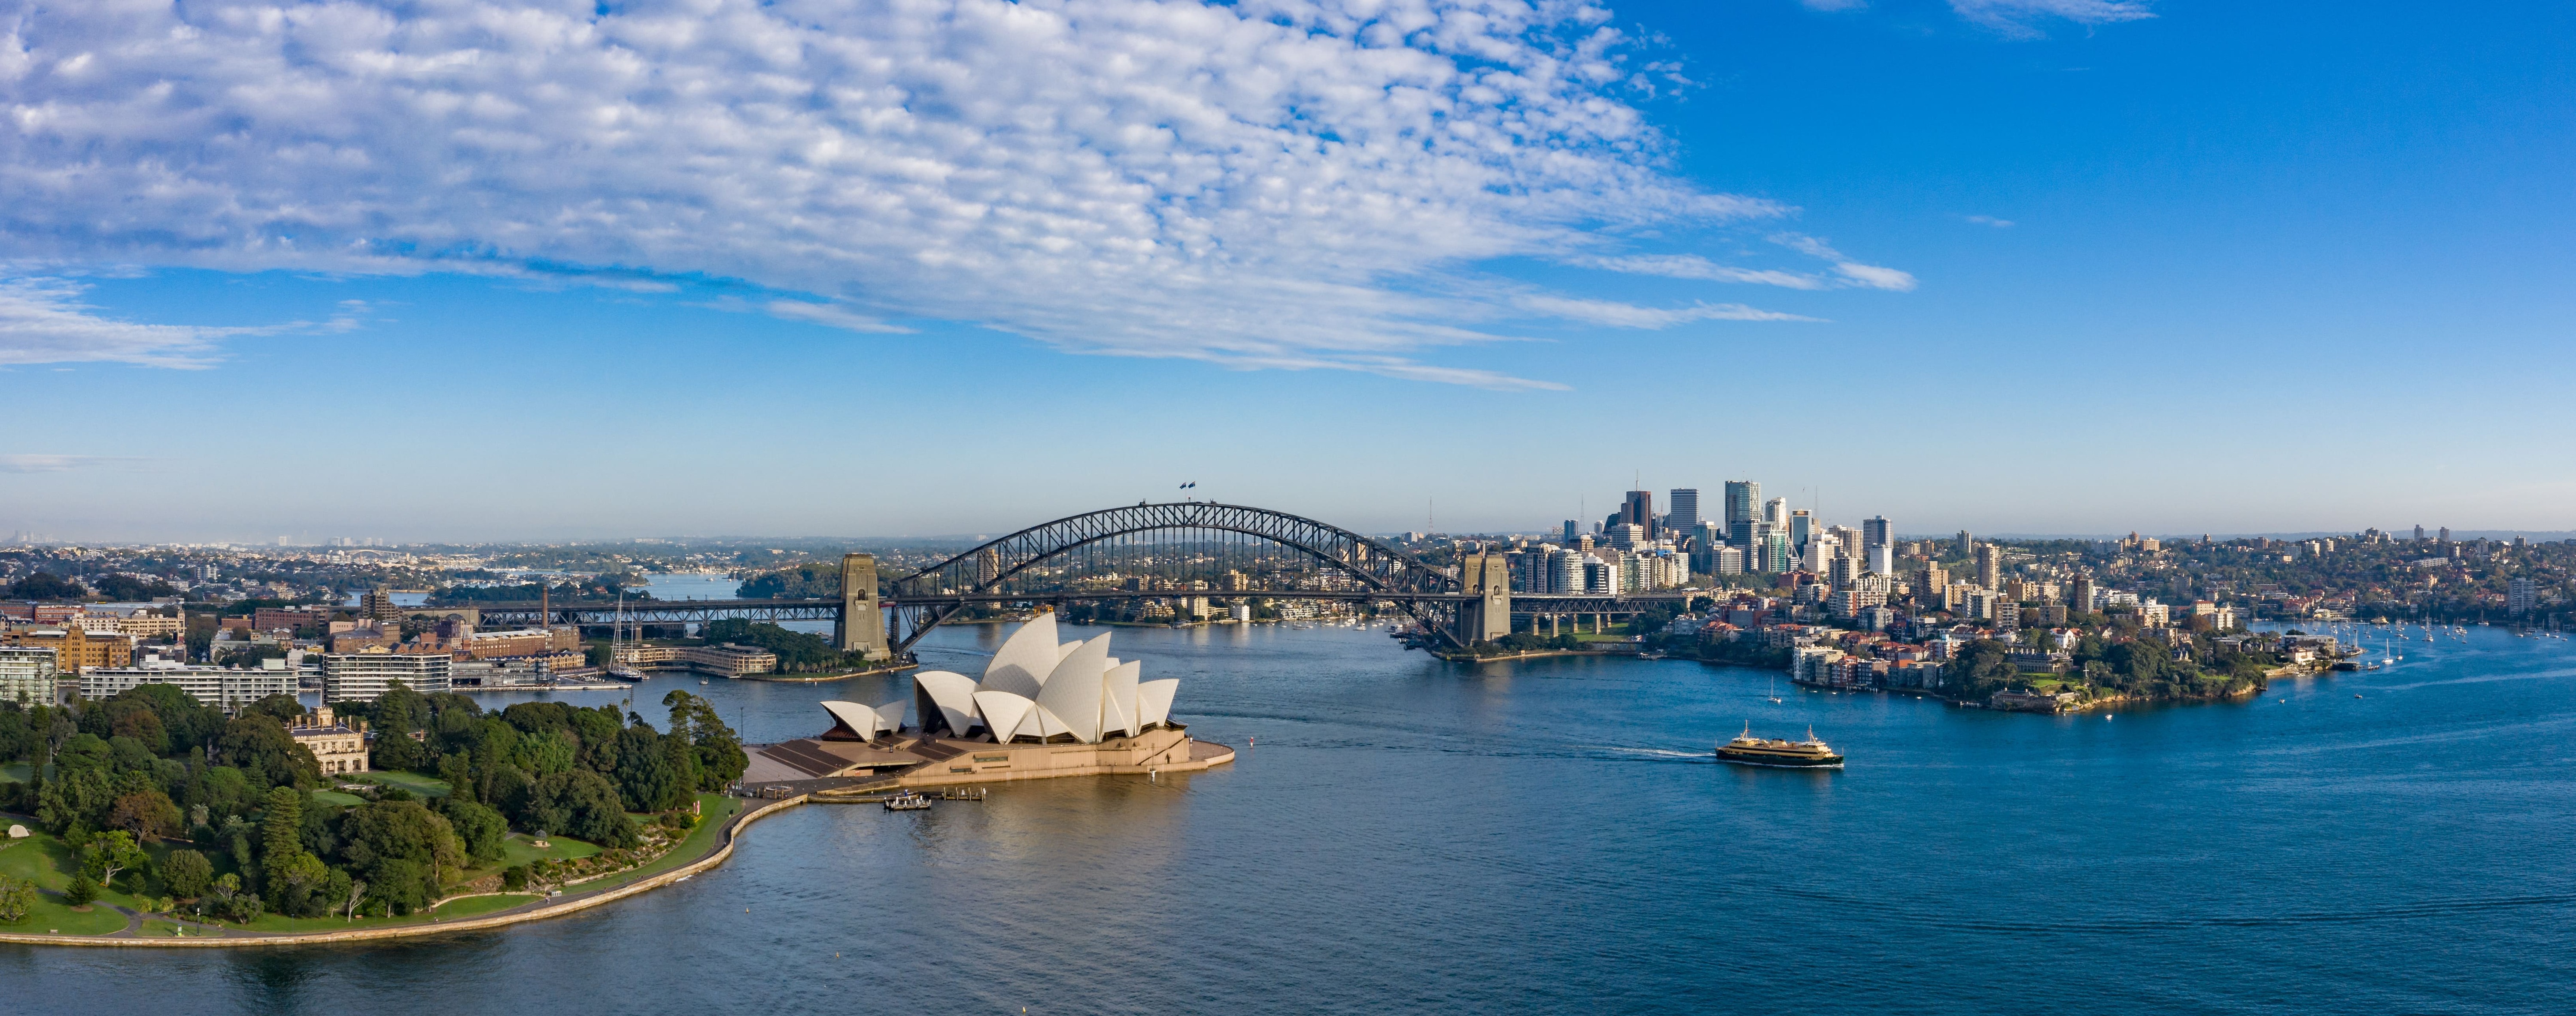 Large vue panoramique de la belle ville de Sydney, en Australie © Michael Evans - stock.adobe.com